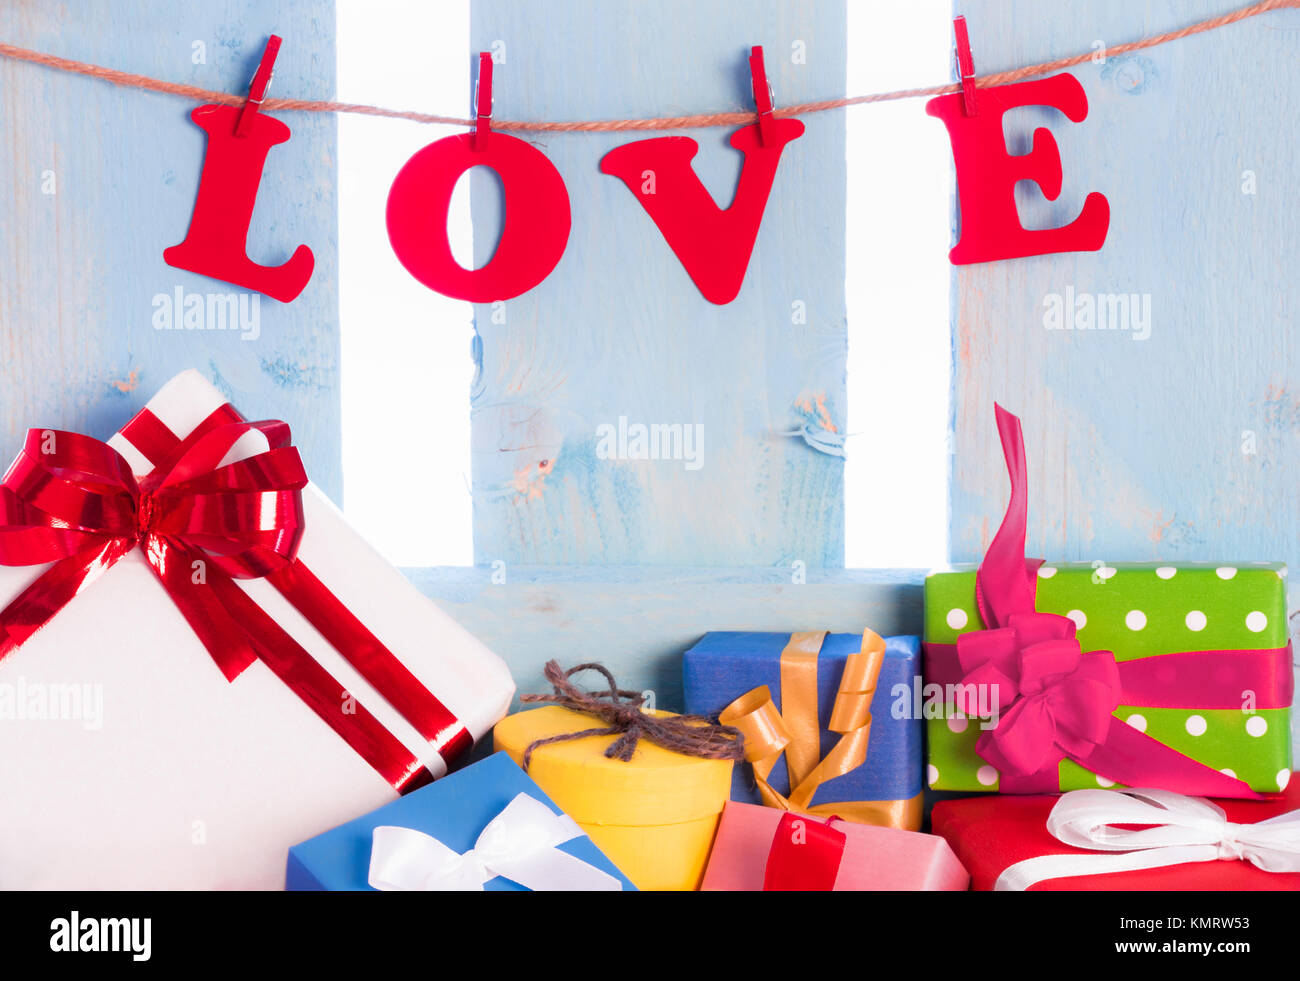 Amore scritte da carta rossa lettere e legato a una stringa con clip in legno su un blu staccionata in legno e una abbondanza di multicolor confezioni regalo. Foto Stock